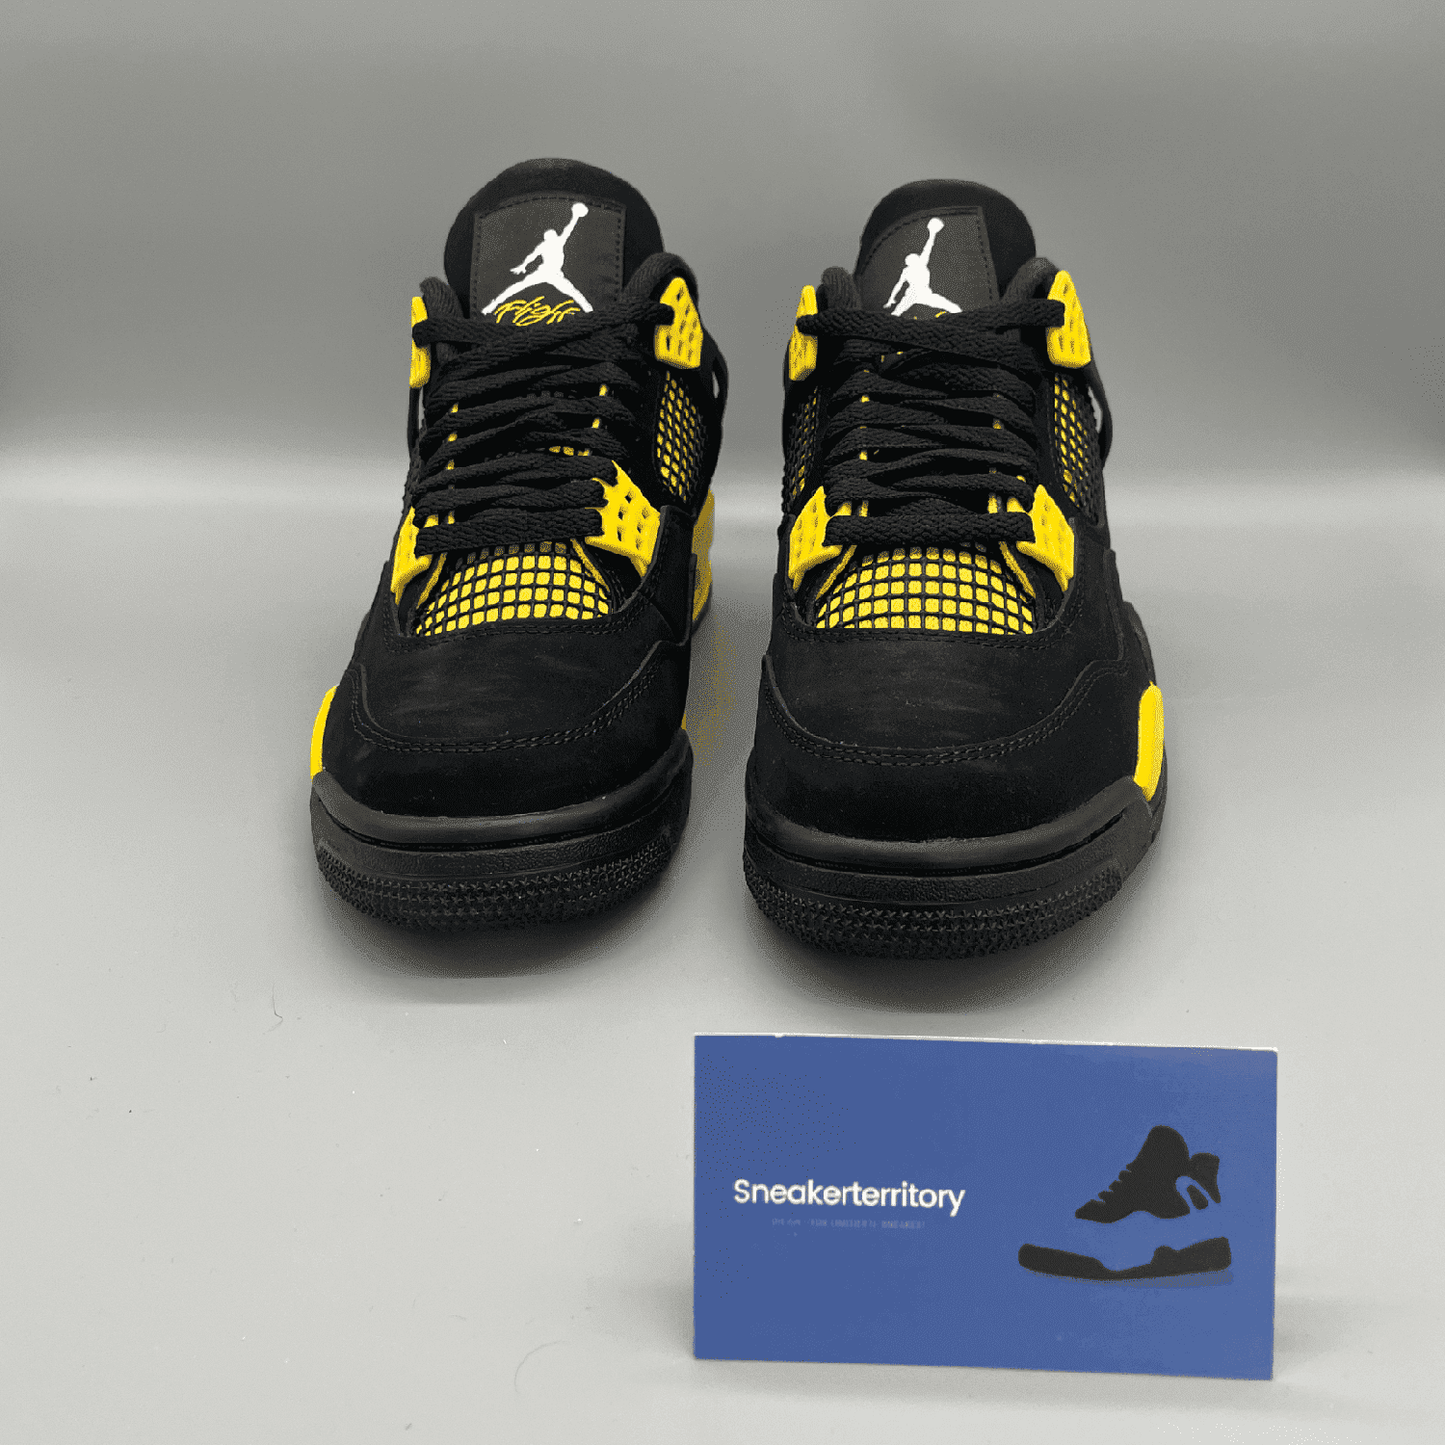 Air Jordan 4 Thunder - Sneakerterritory; Sneaker Territory 5